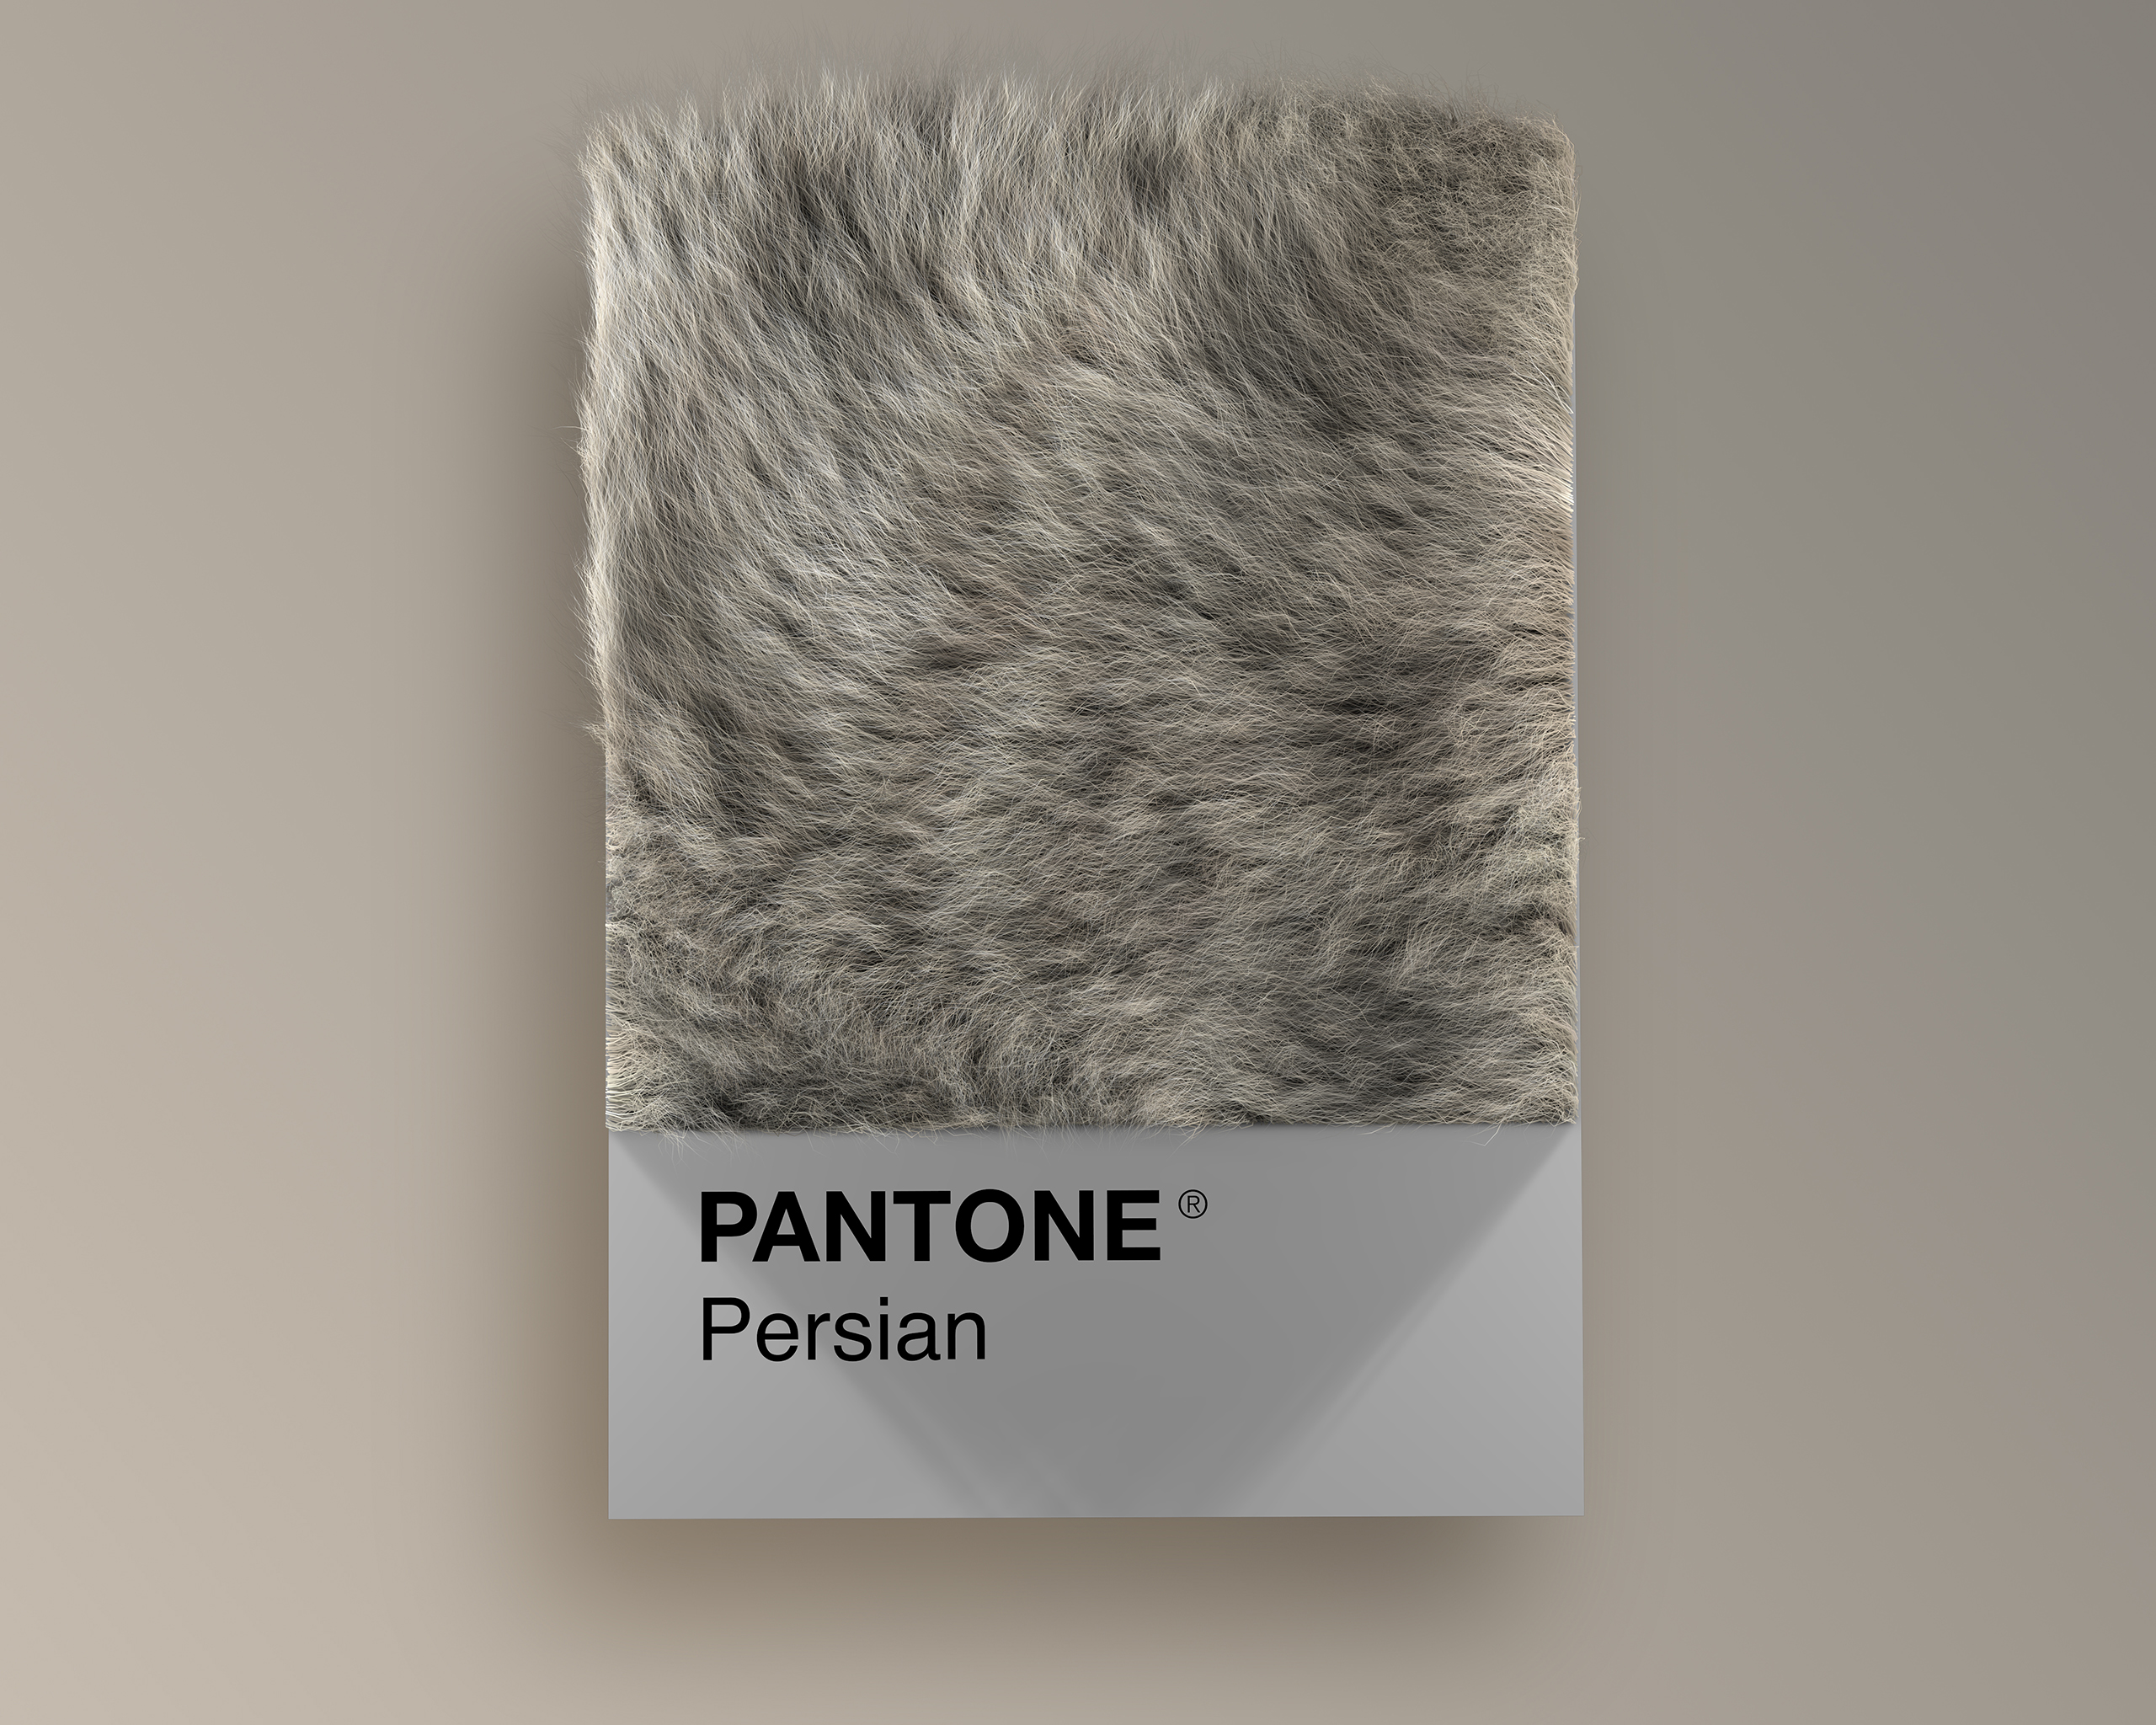 Persian as Pantone